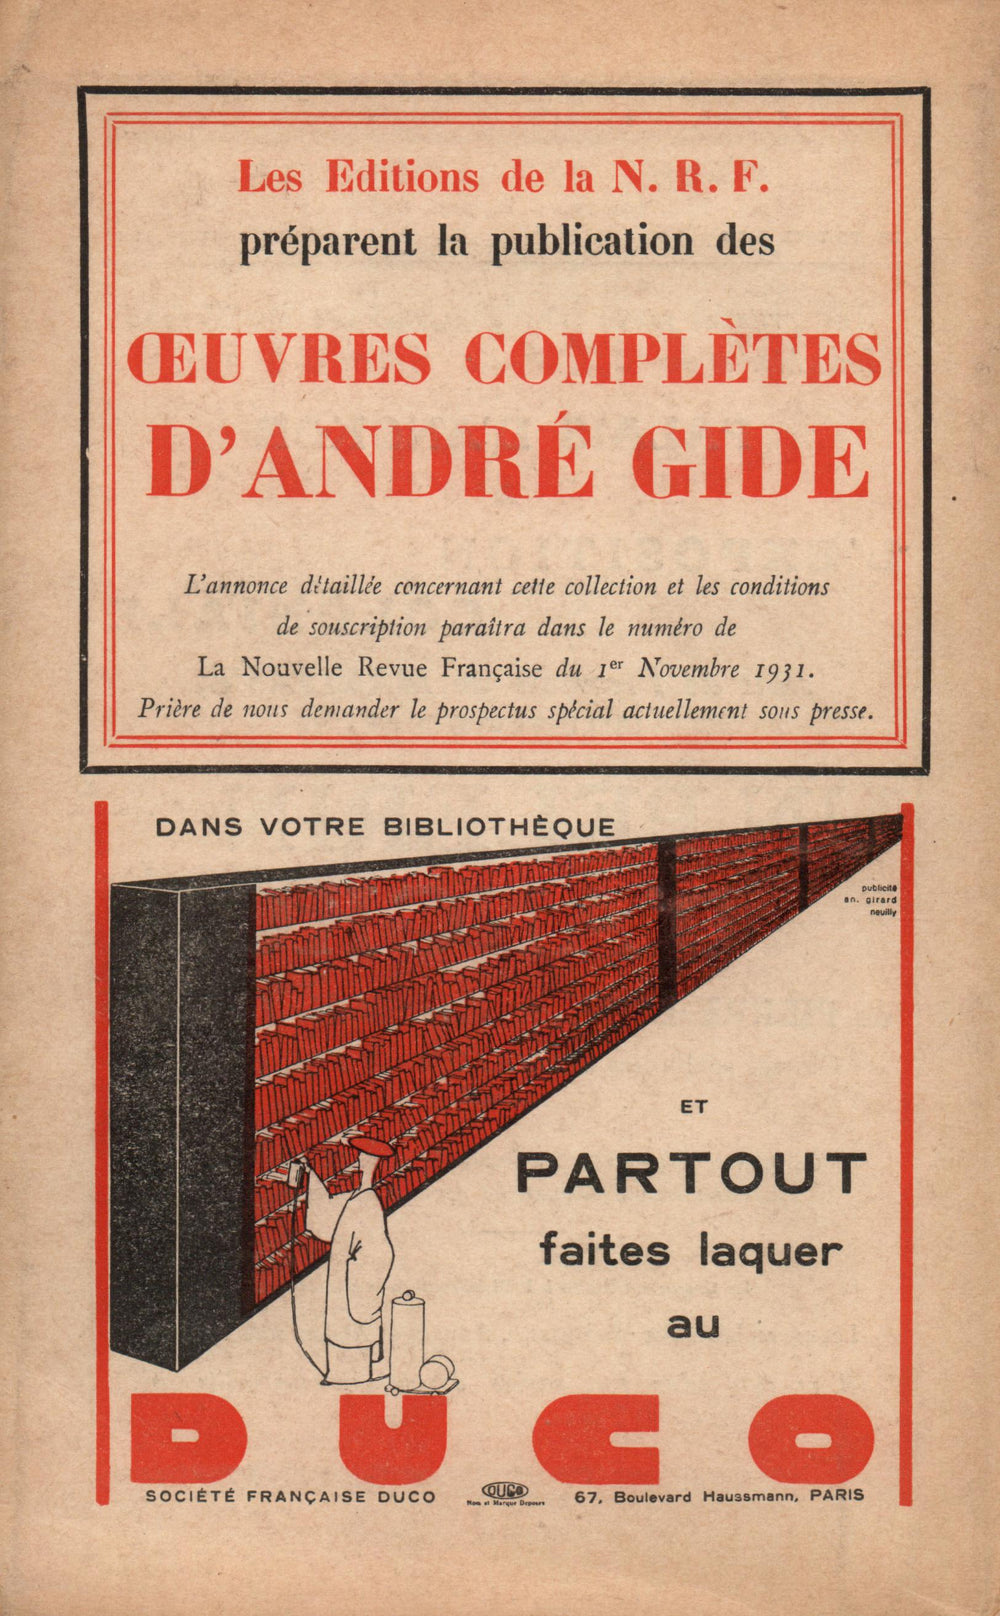 La Nouvelle Revue Française N' 217 (Octobre 1931)